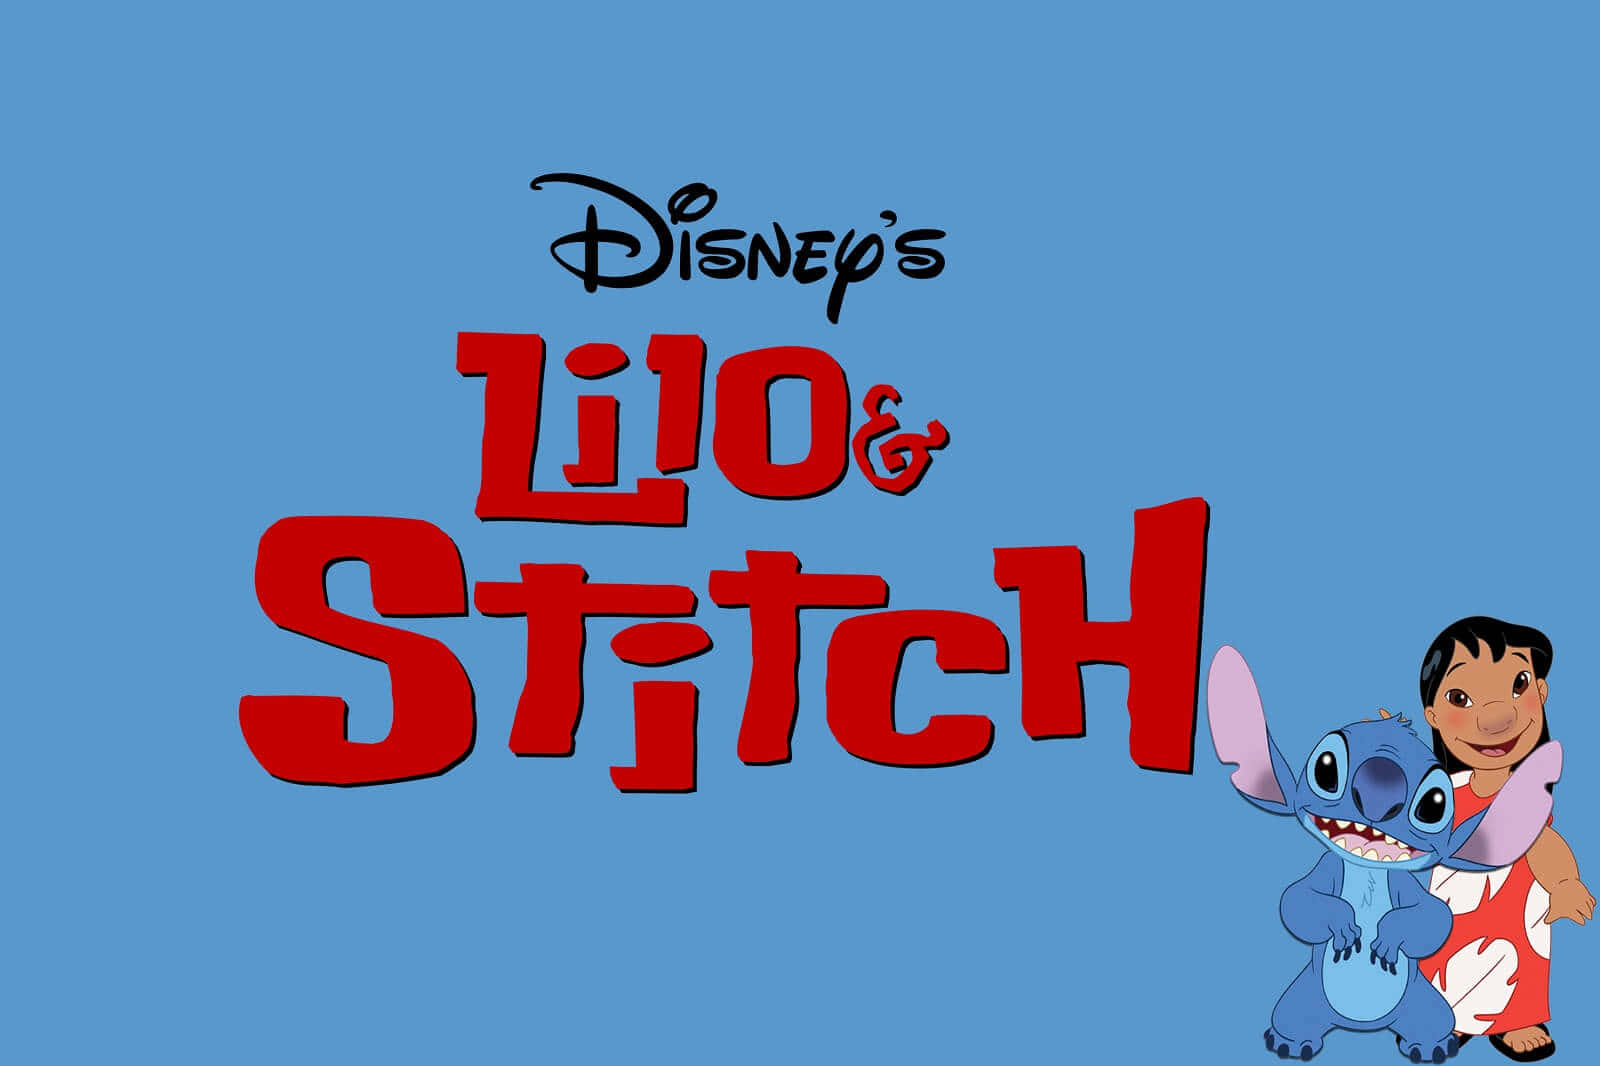 "Lilo and Stitch Have a Fun Summer Adventure"